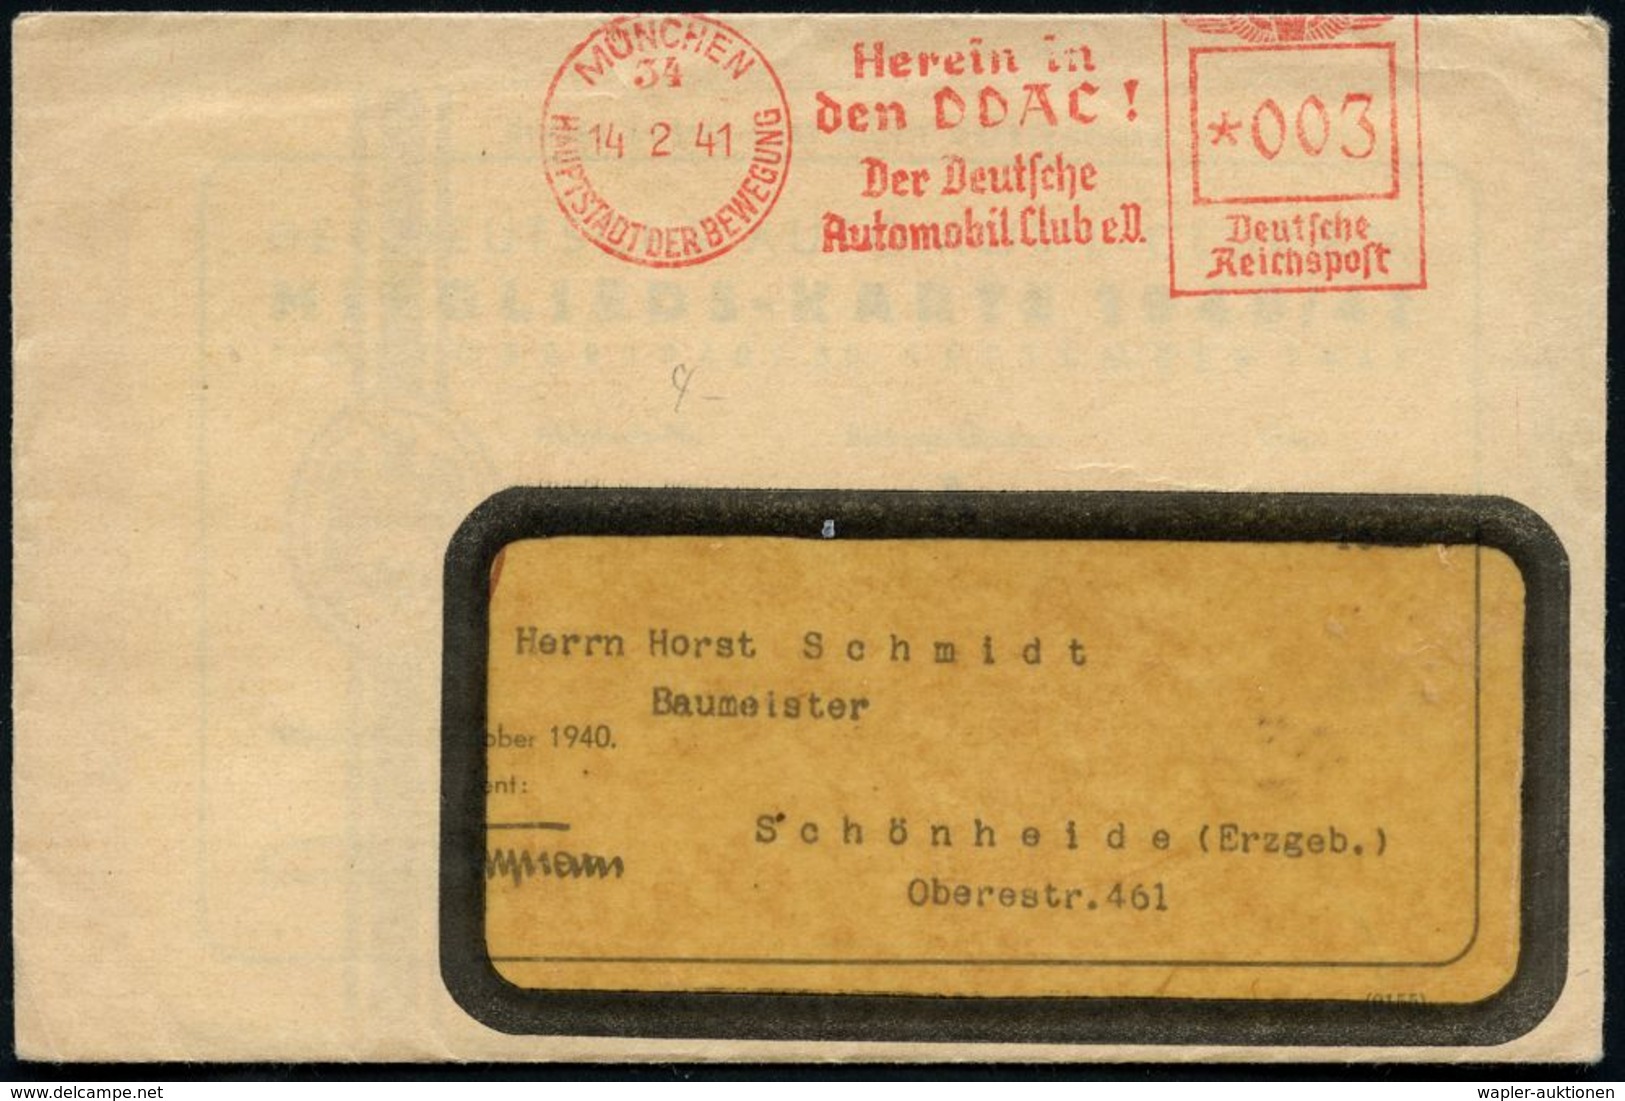 MÜNCHEN/ 34/ HDB/ Herein In/ Den DDAC!/ Der Deutsche/ Automobil Club EV. 1941 (14.2.) AFS Auf Fernbf. Mit Inhalt: Mitgli - Automobili